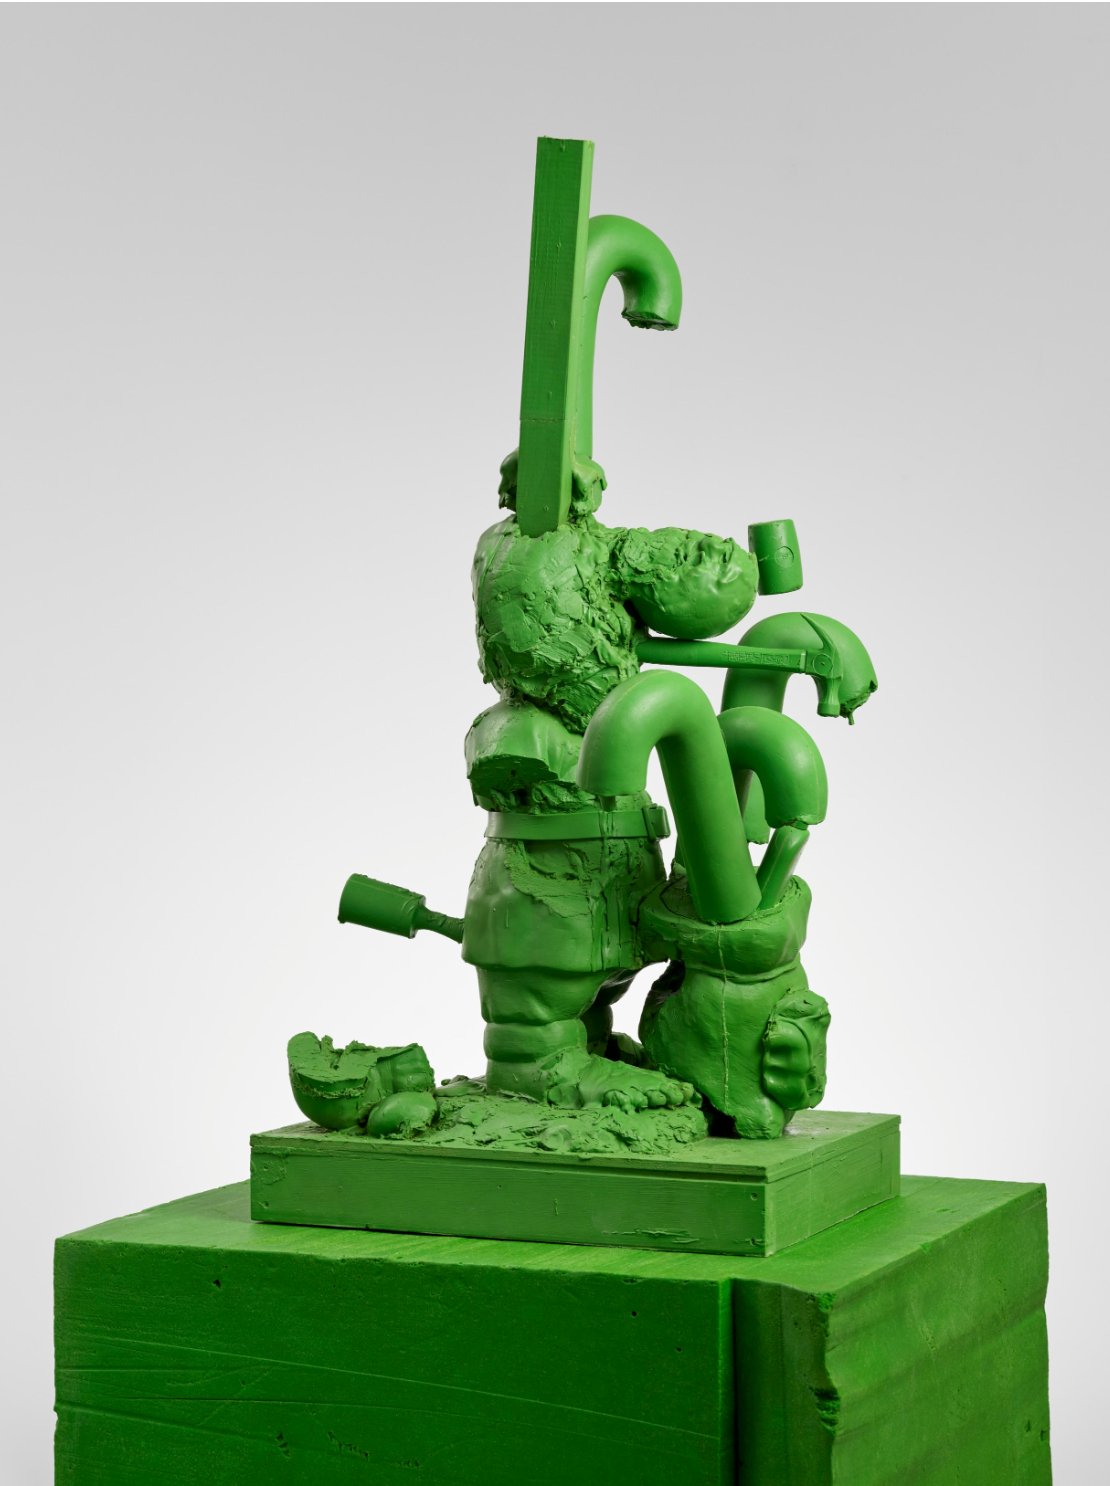  Paul McCarthy  Santa Candy Cane  (2004) carbon fibre (green) 53 1/2 x 25 1/4 x 27 3/8 in.&nbsp; pedestal: 41 x 33 1/8 x 29 in 